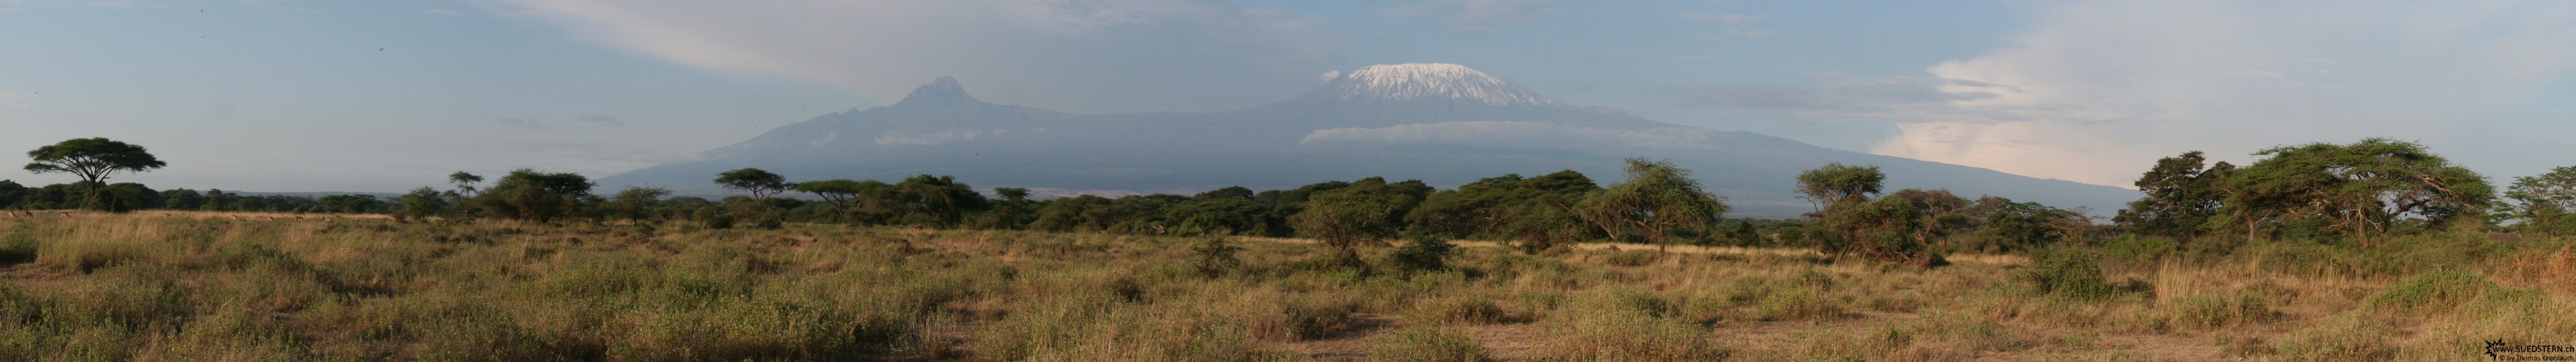 2007-04-12 - Kenya - Kimana Panorama - Kilimanjaro big